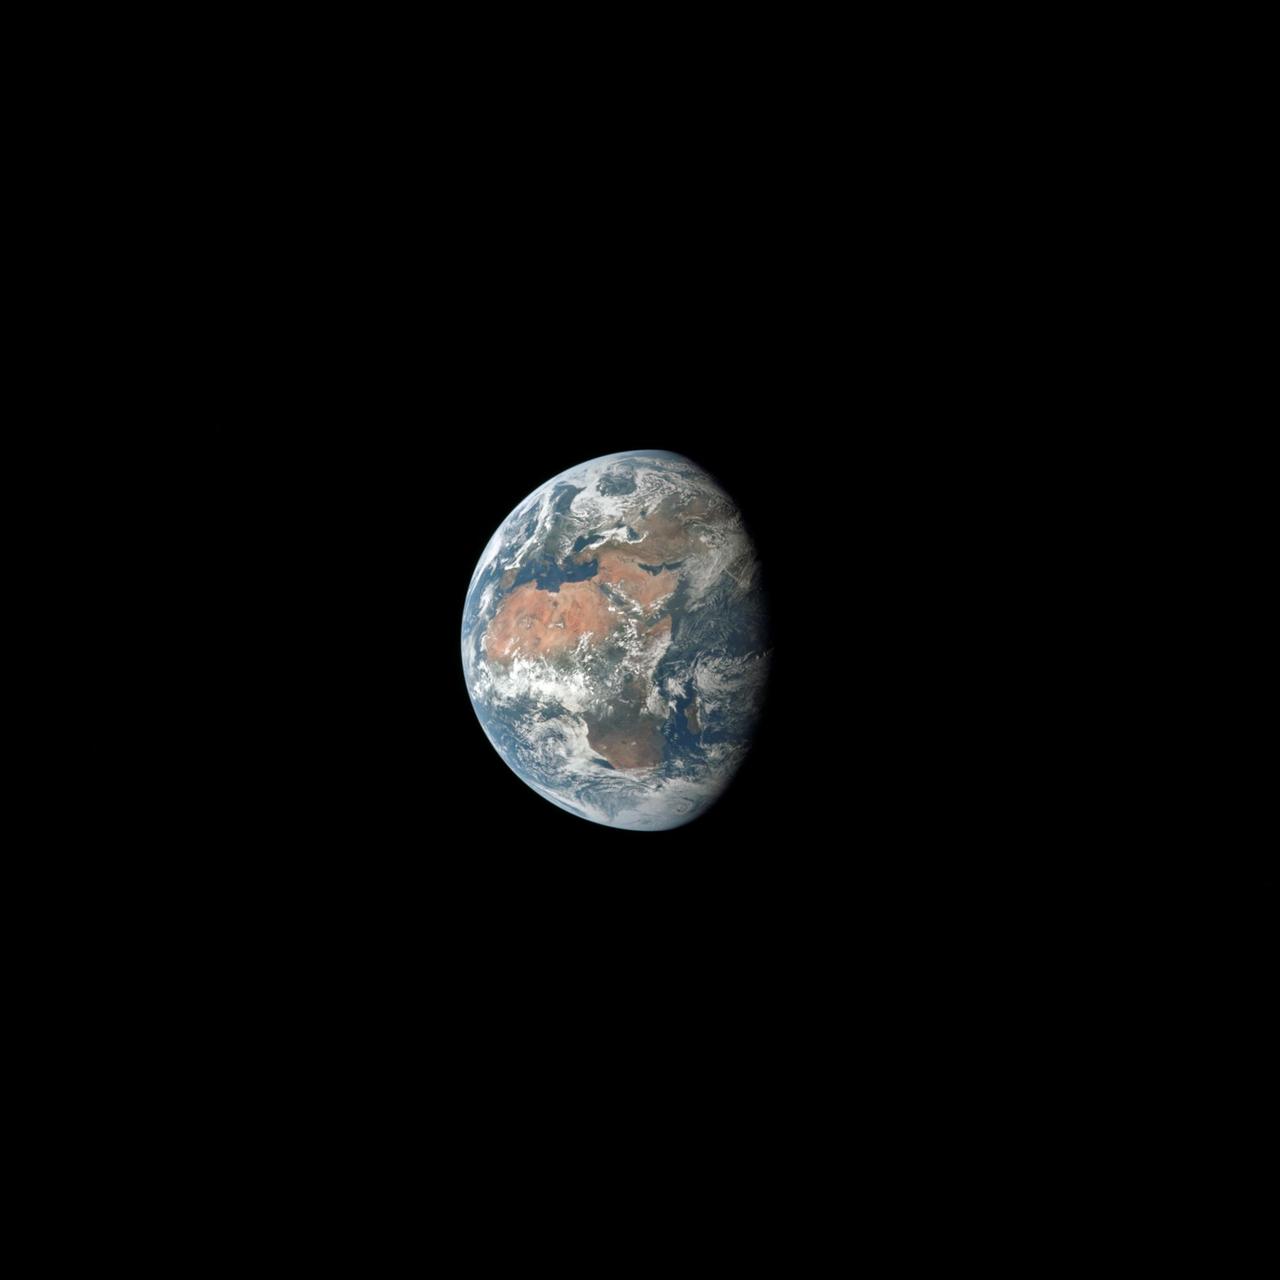 Auf dem Weg zum Mond fotografierte die Crew der Apollo 11 Mission die Erde